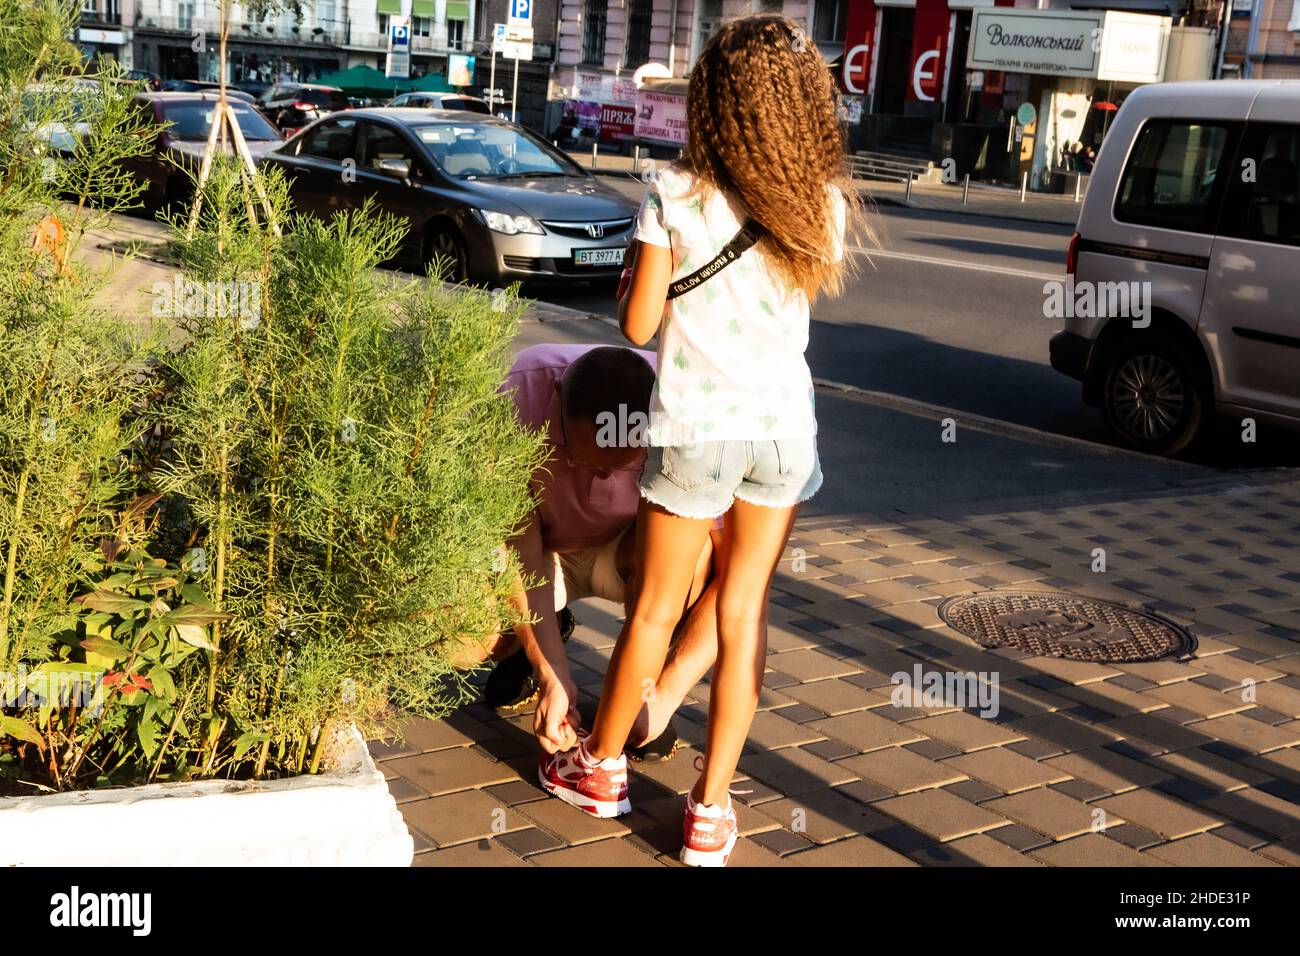 Papa aide sa fille à attacher des lacets sur ses baskets le jour d'été ensoleillé dans une rue à Kiev.Fille accepte l'aide avec la douceur merveilleuse et la grâce royale. Banque D'Images